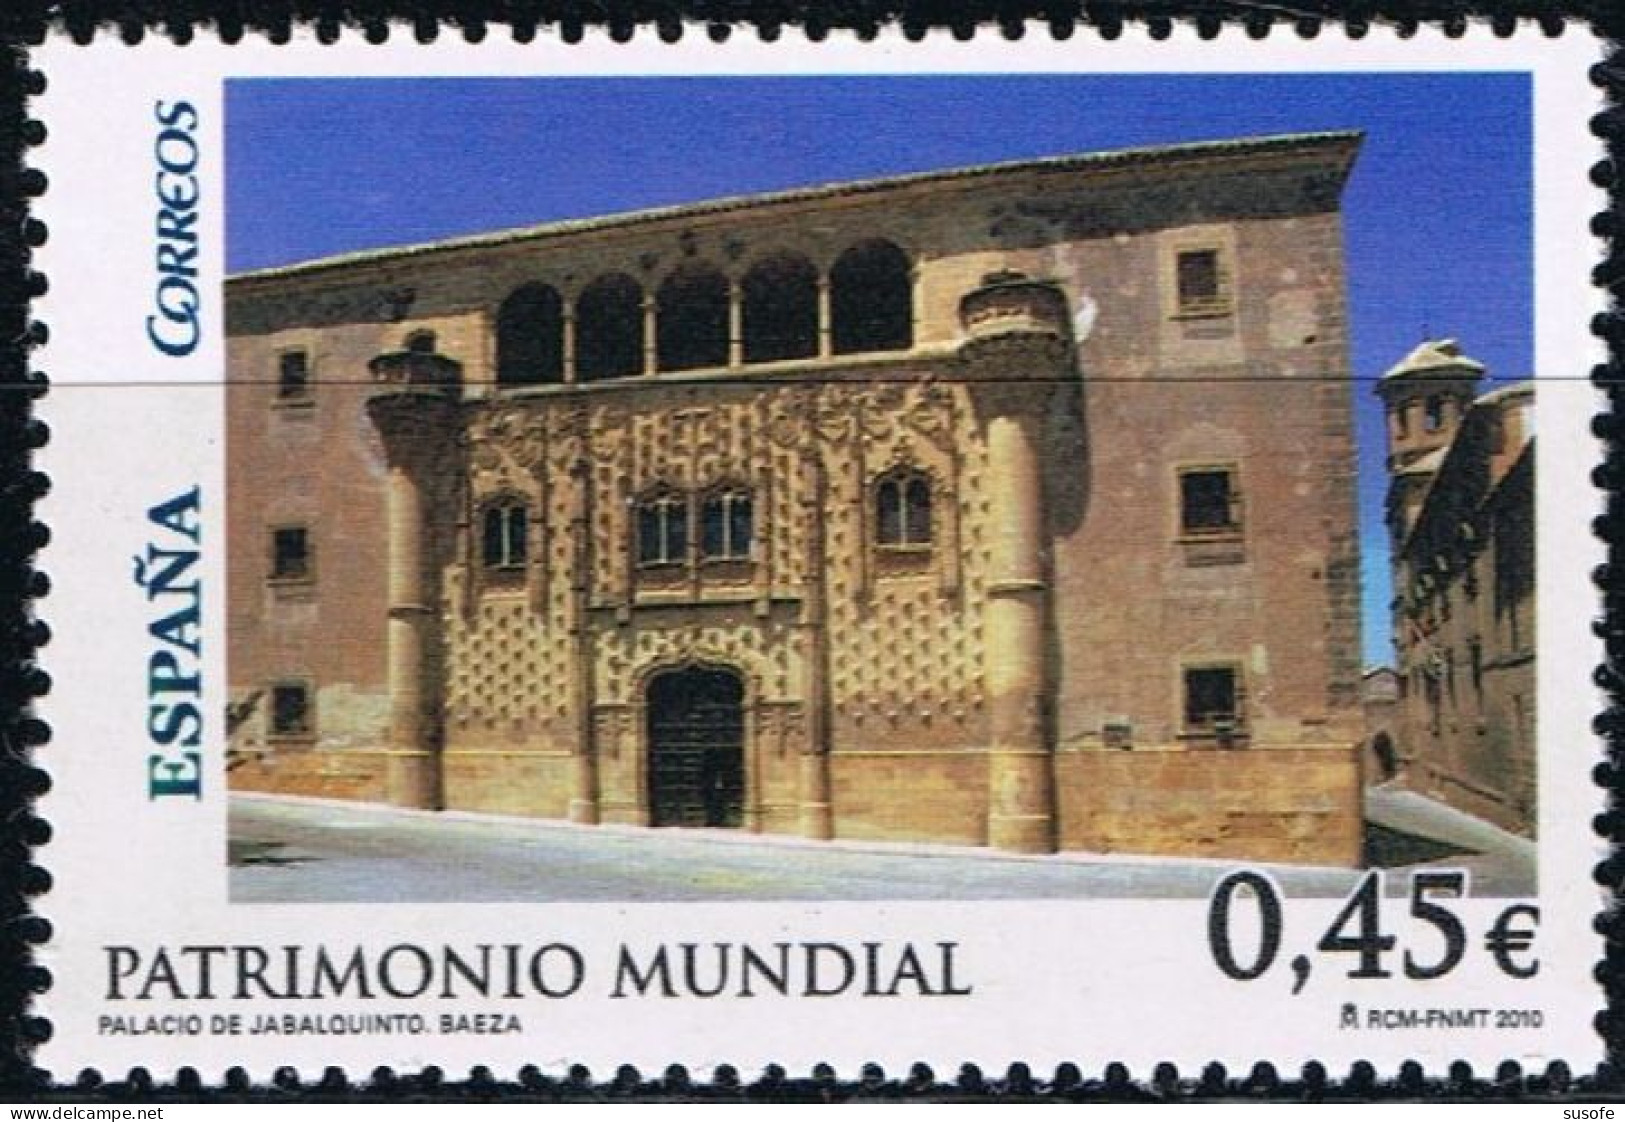 España 2010 Edifil 4557 Sello ** Patrimonio Mundial Palacio De Jabalquinto Baeza (Jaen) Michel 4499 Yvert 4203 Spain - Nuovi